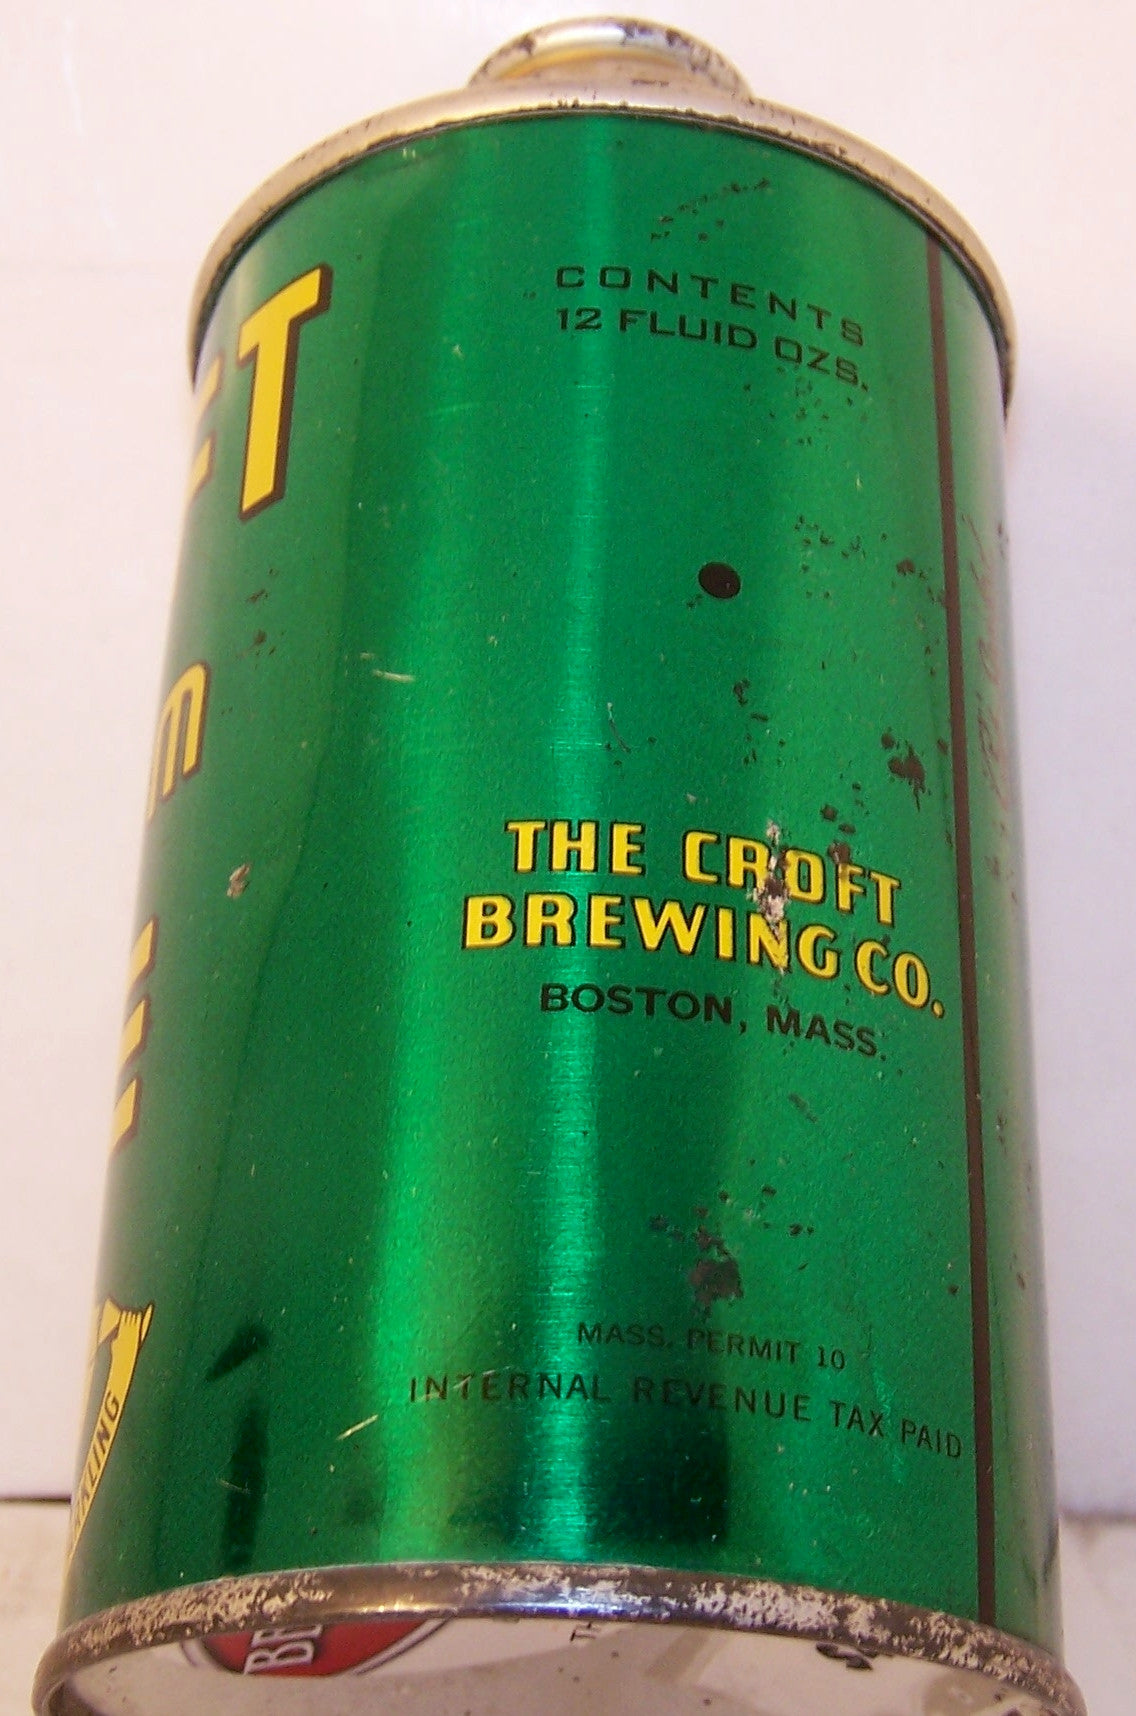 Croft Cream Ale, USBC 158-20, Grade 1 Sold on 4/24/15